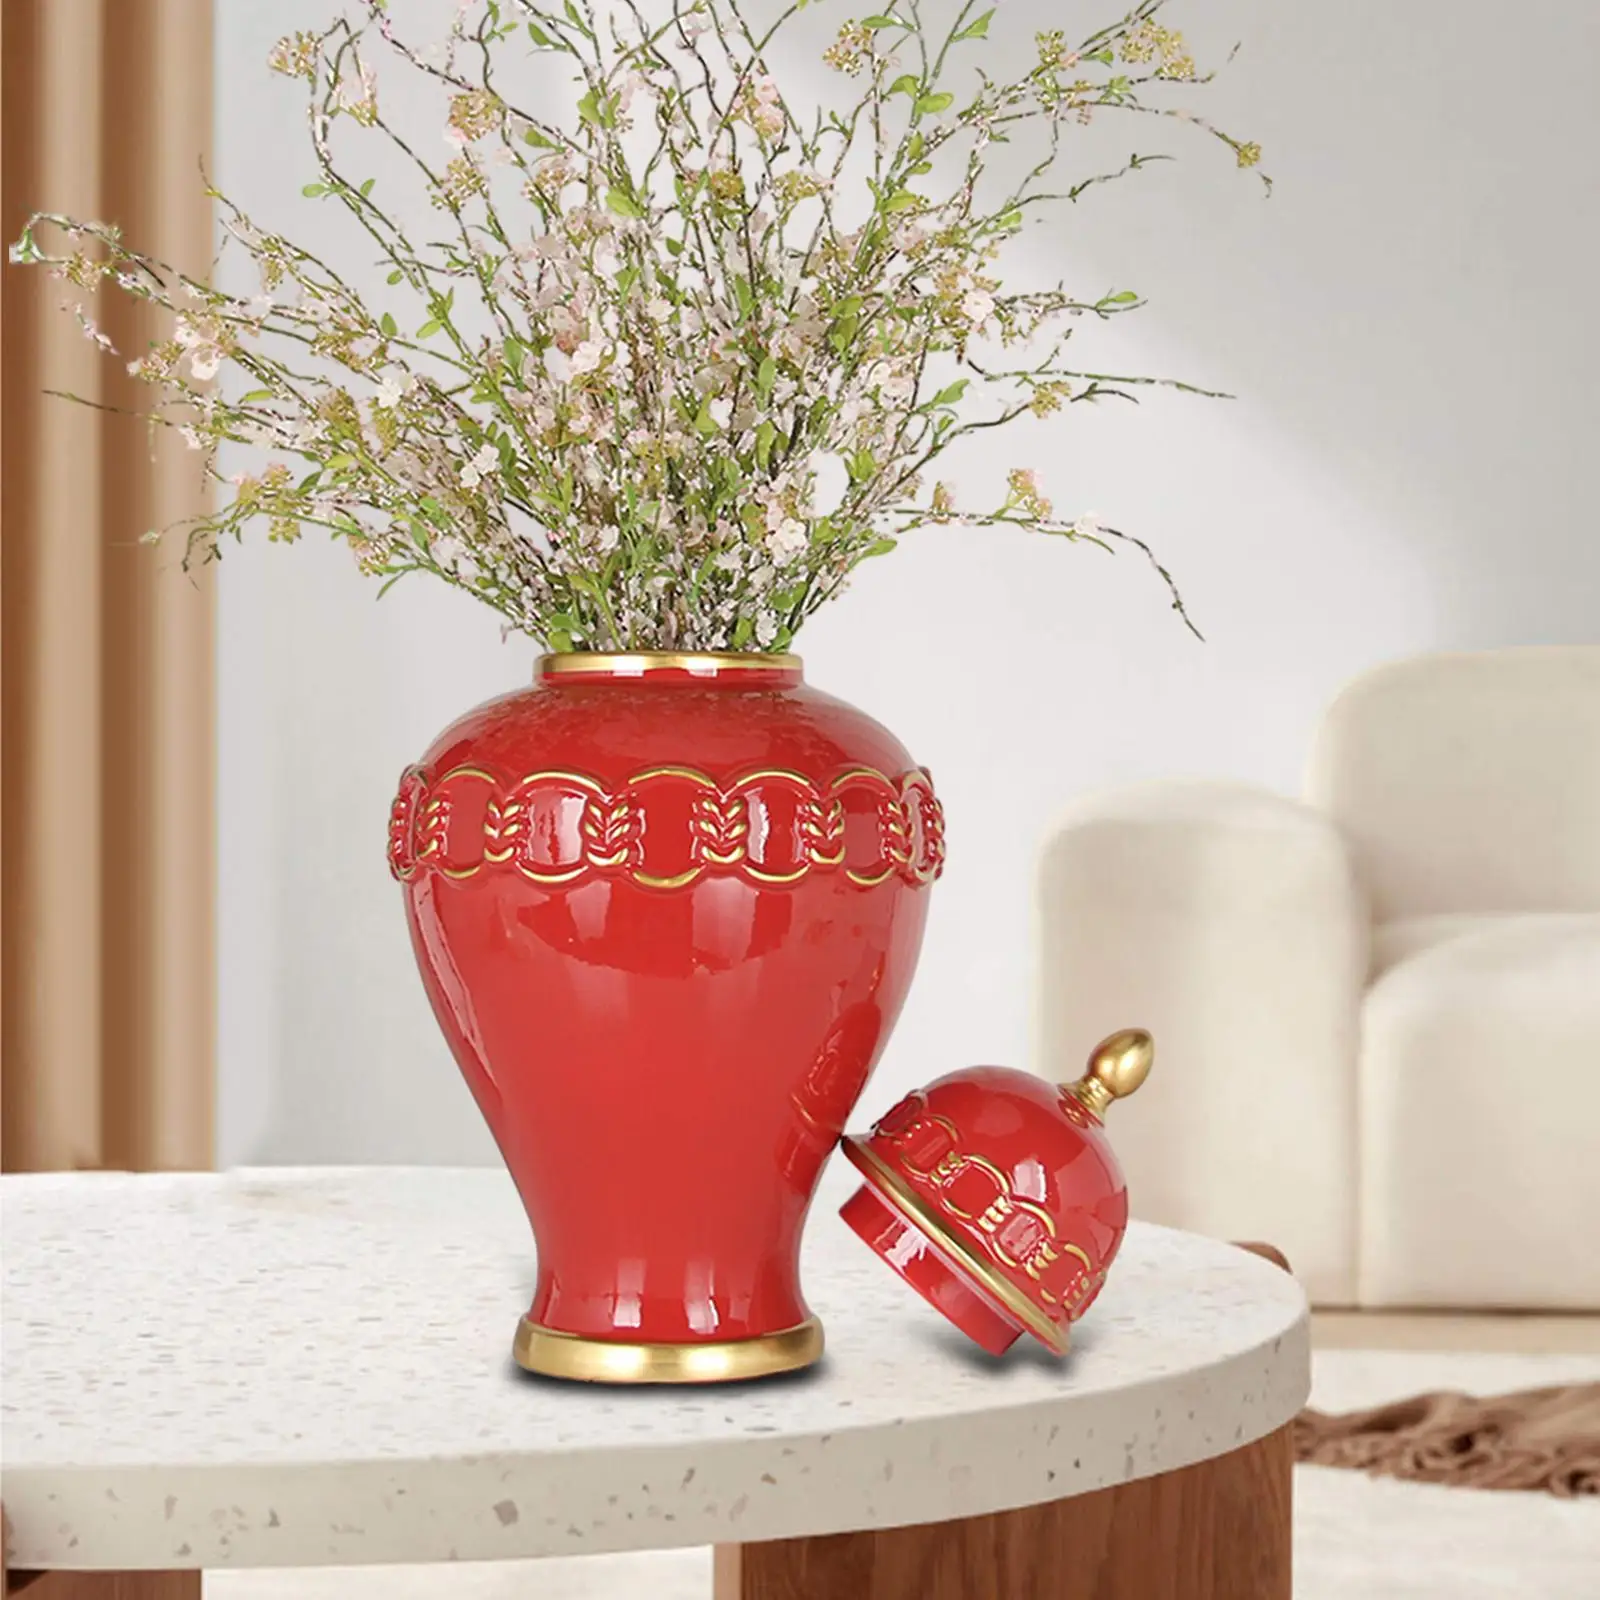 Porcelain Ginger Jar Collection with Lid Display Handicraft Ceramic Vase Temple Jar for Bedroom Weddings Shelf Office Home Decor